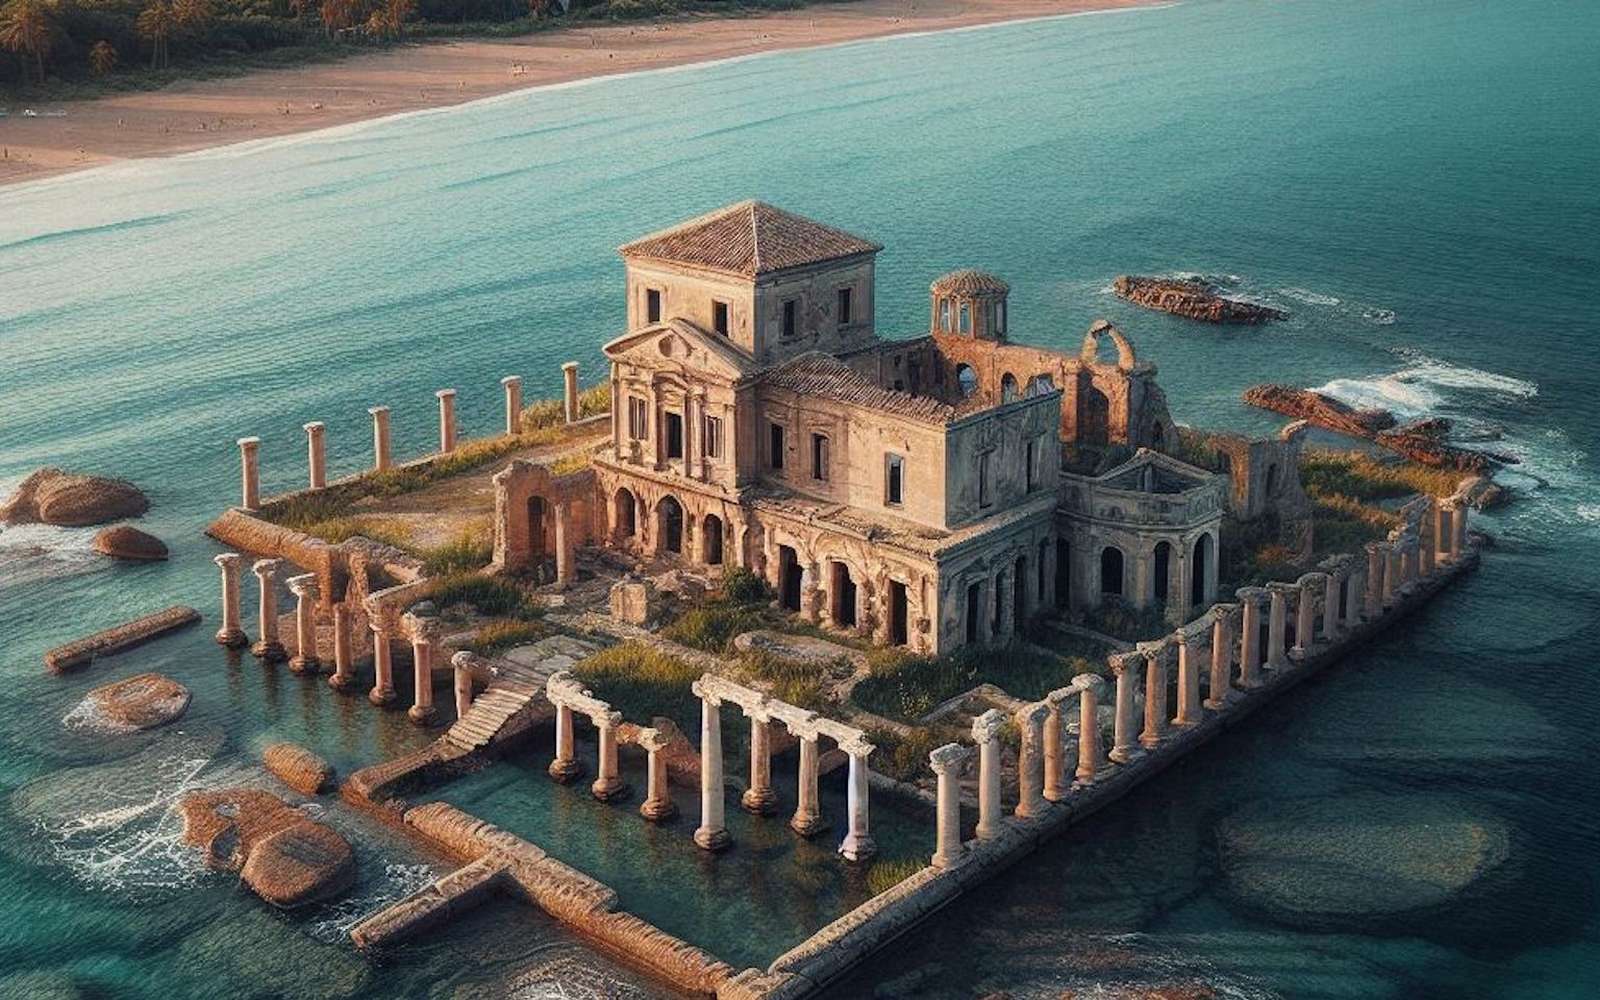 Les ruines d'une structure circulaire découverte au large des côtes italiennes